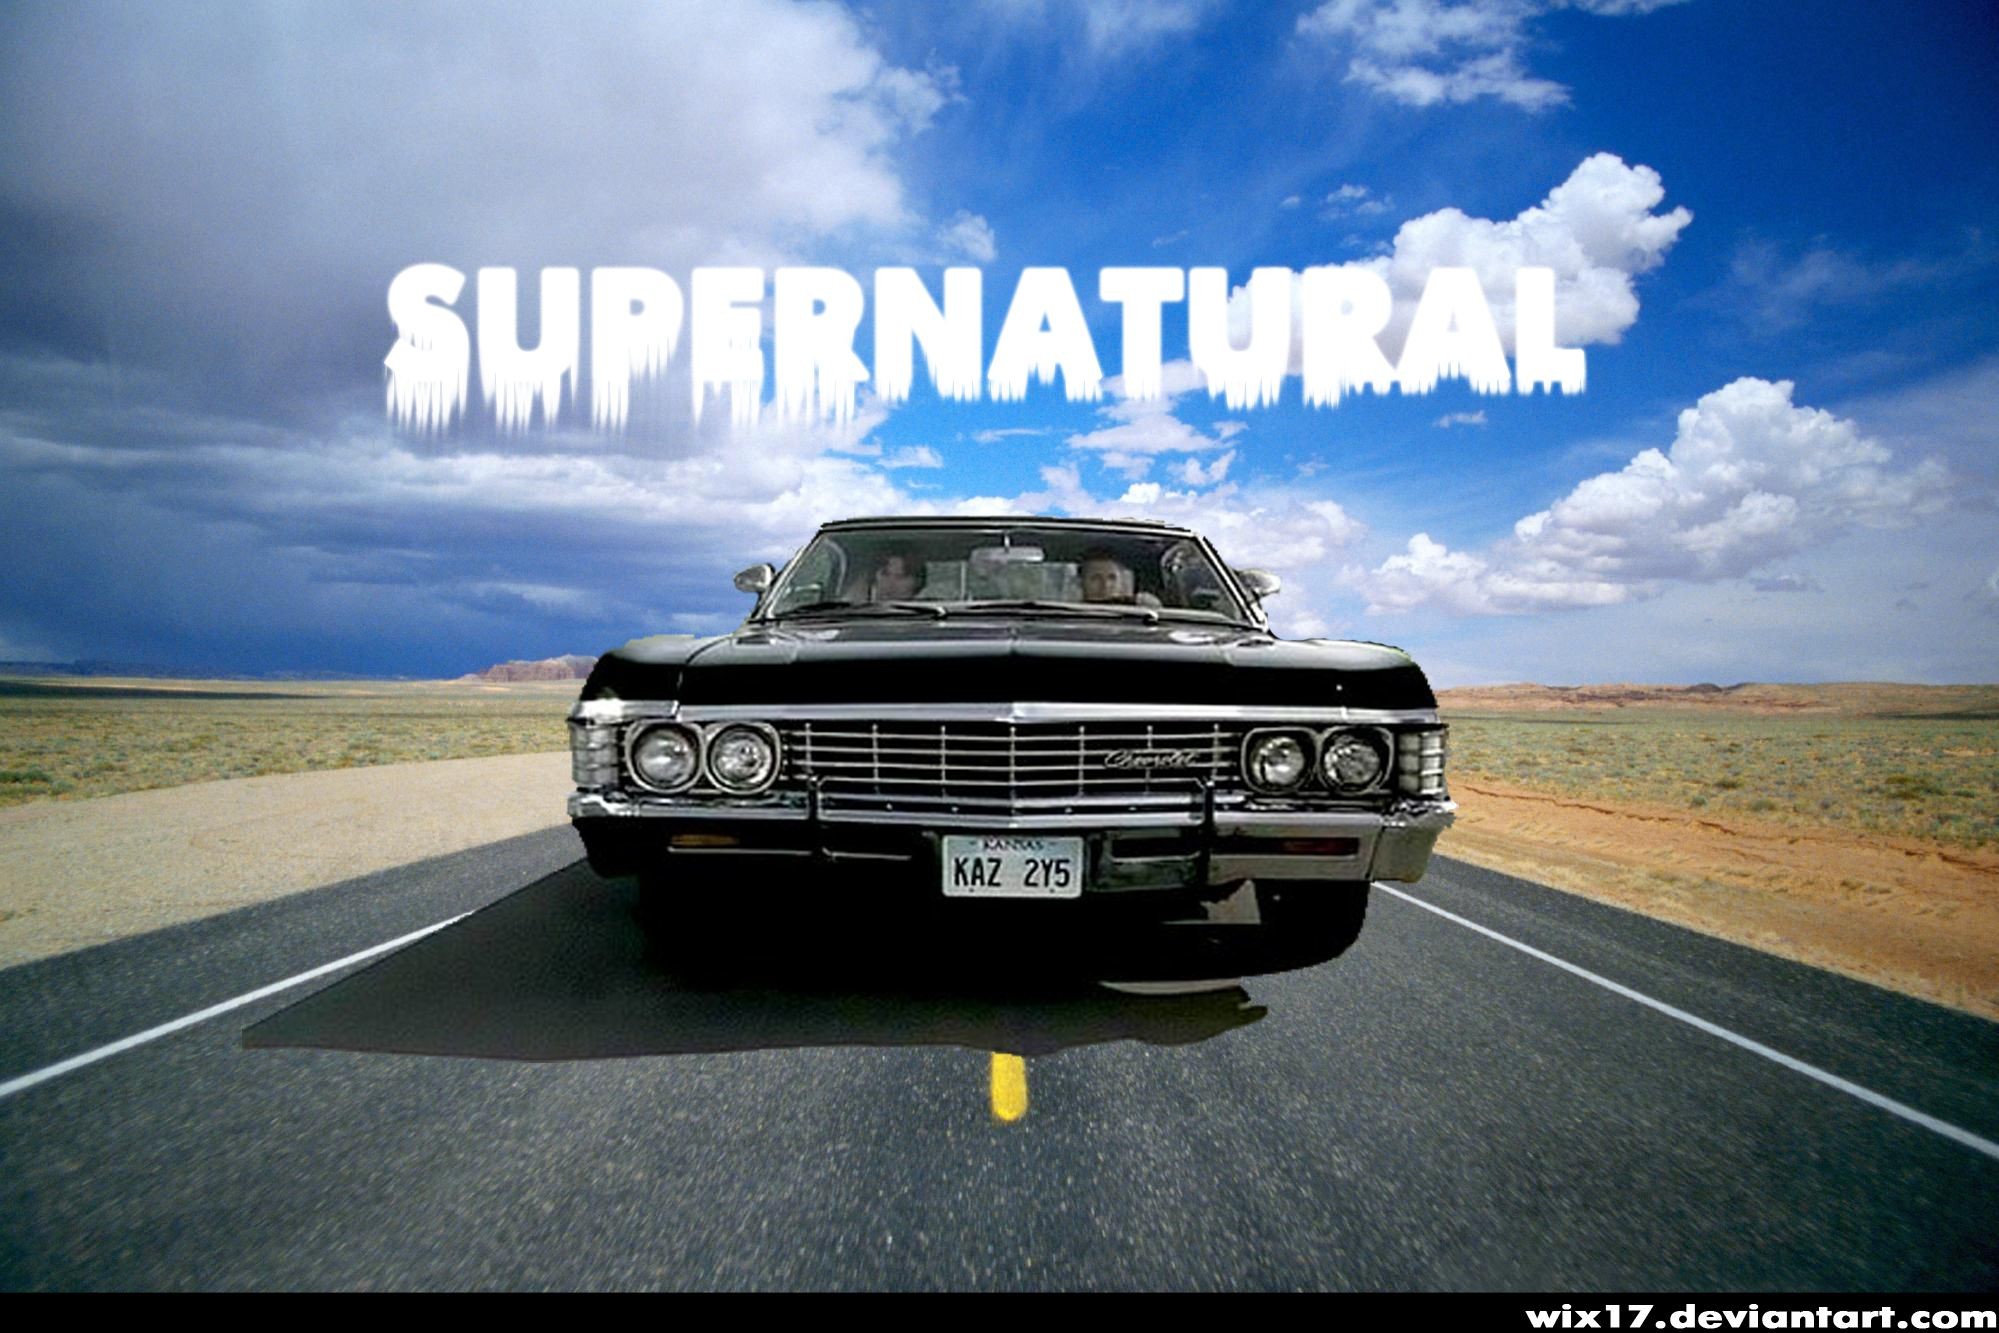 1999x1333 Supernatural Background Impala images